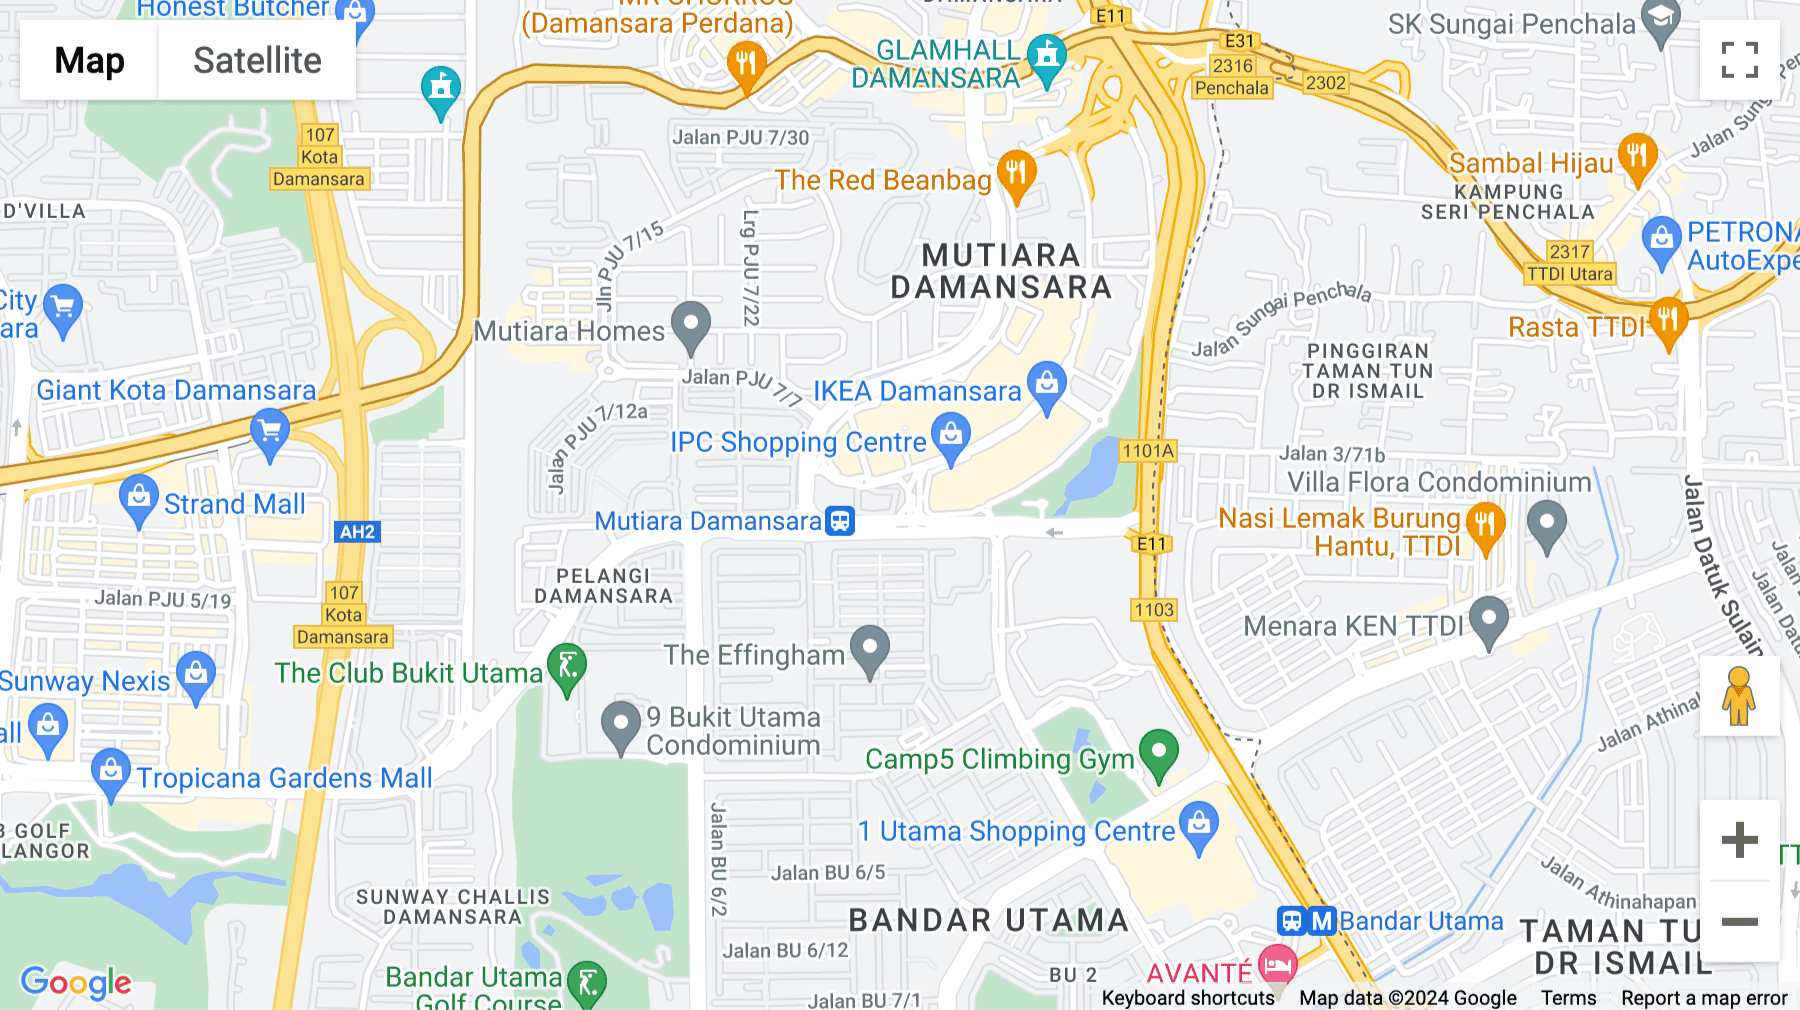 Click for interative map of No.1, Jalan Petaling Jaya Utara 7/3, Surian Tower, Level 12, Petaling Jaya